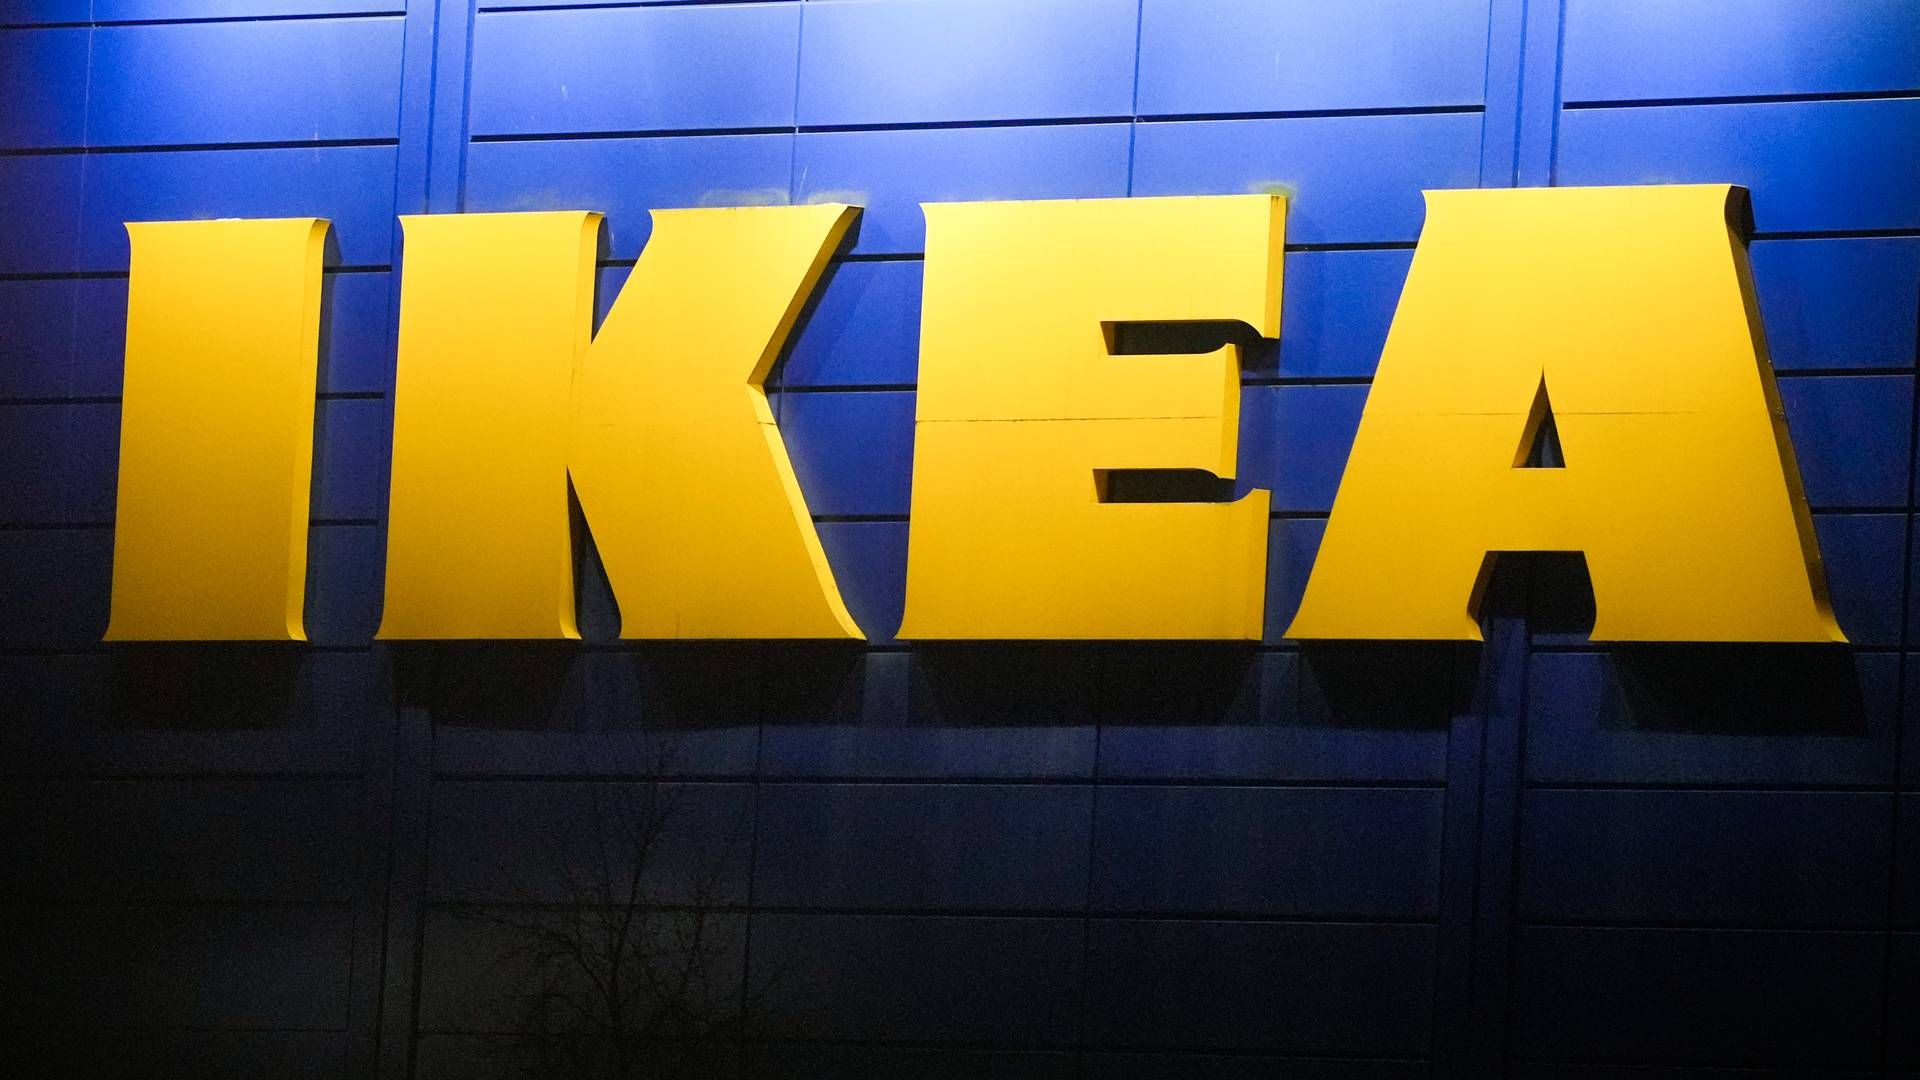 Ikea-eide Ikano bank går for skybasert kjernebanksystem fra Tata Consultancy Services. | Foto: NTB